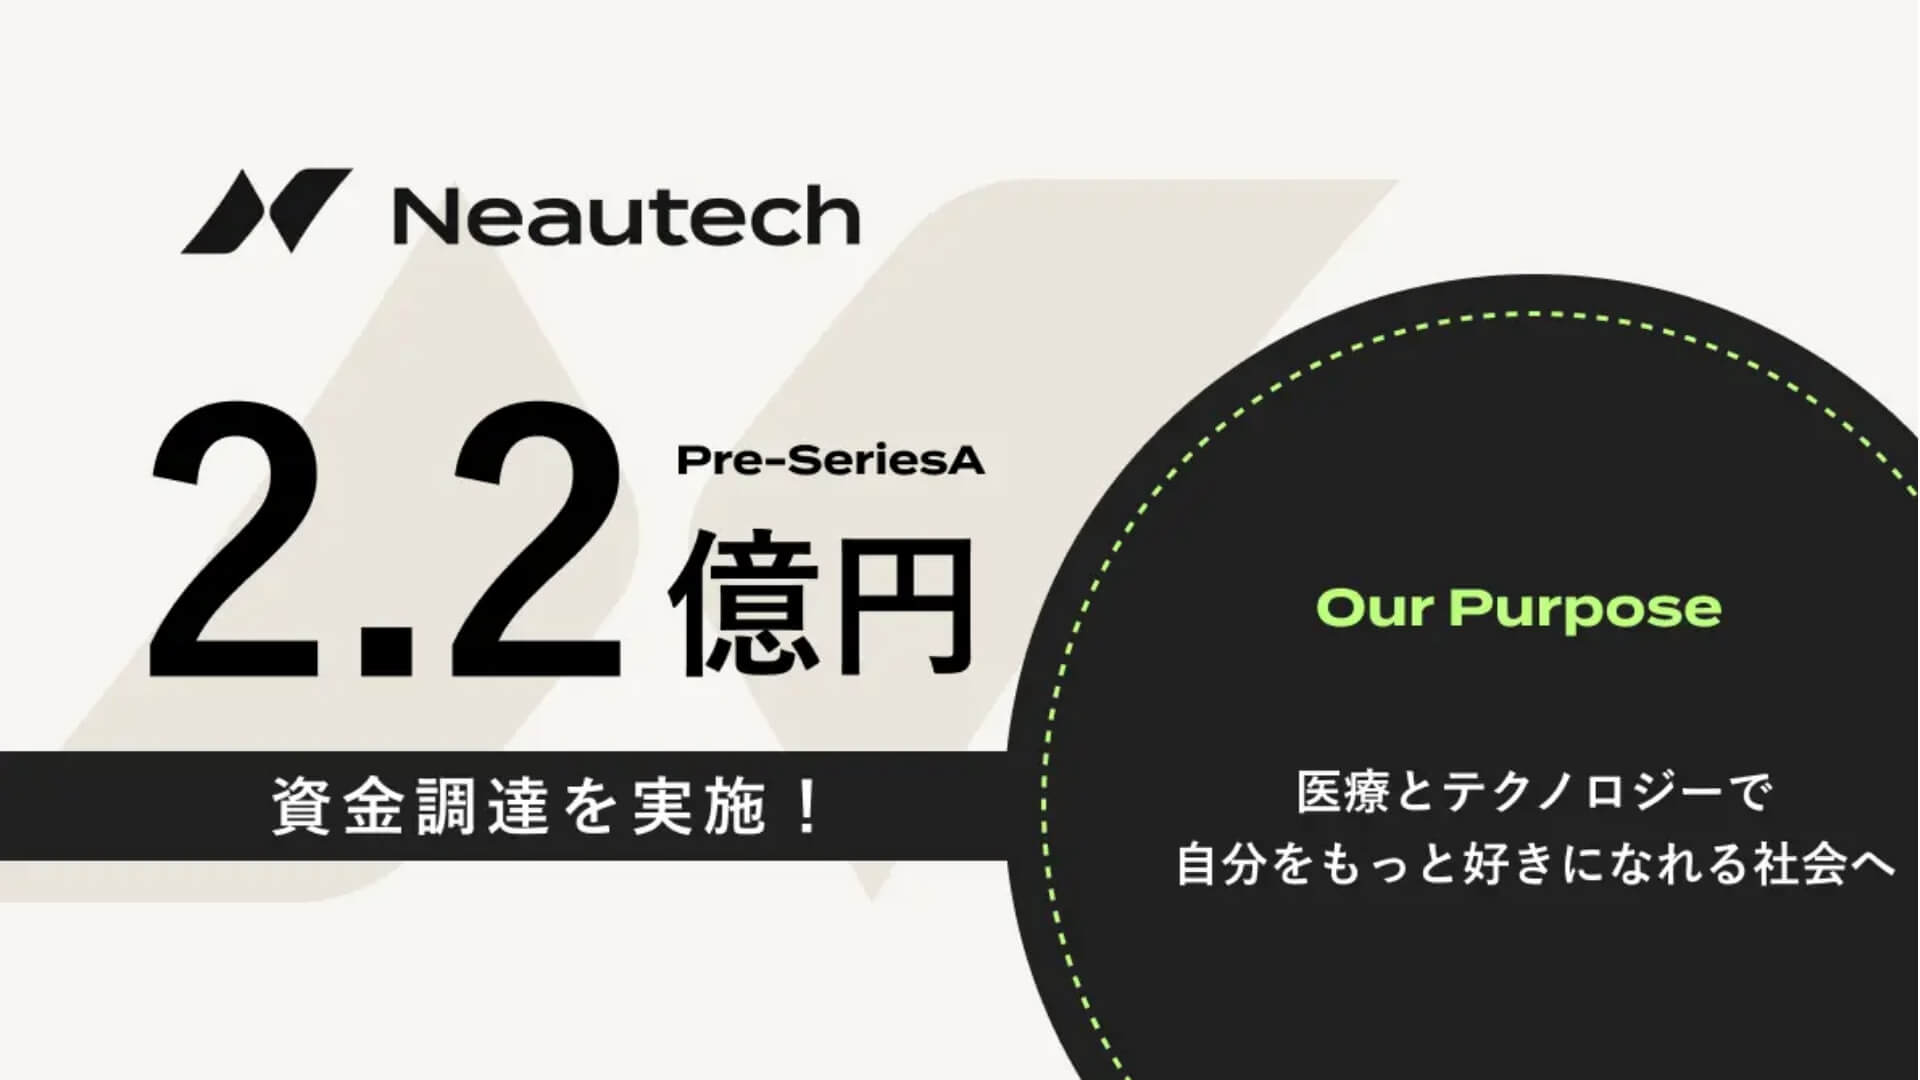 オンライン美肌治療サービスを提供する株式会社Neautechが2.2億円の資金調達ー累計調達額は8.3億円に